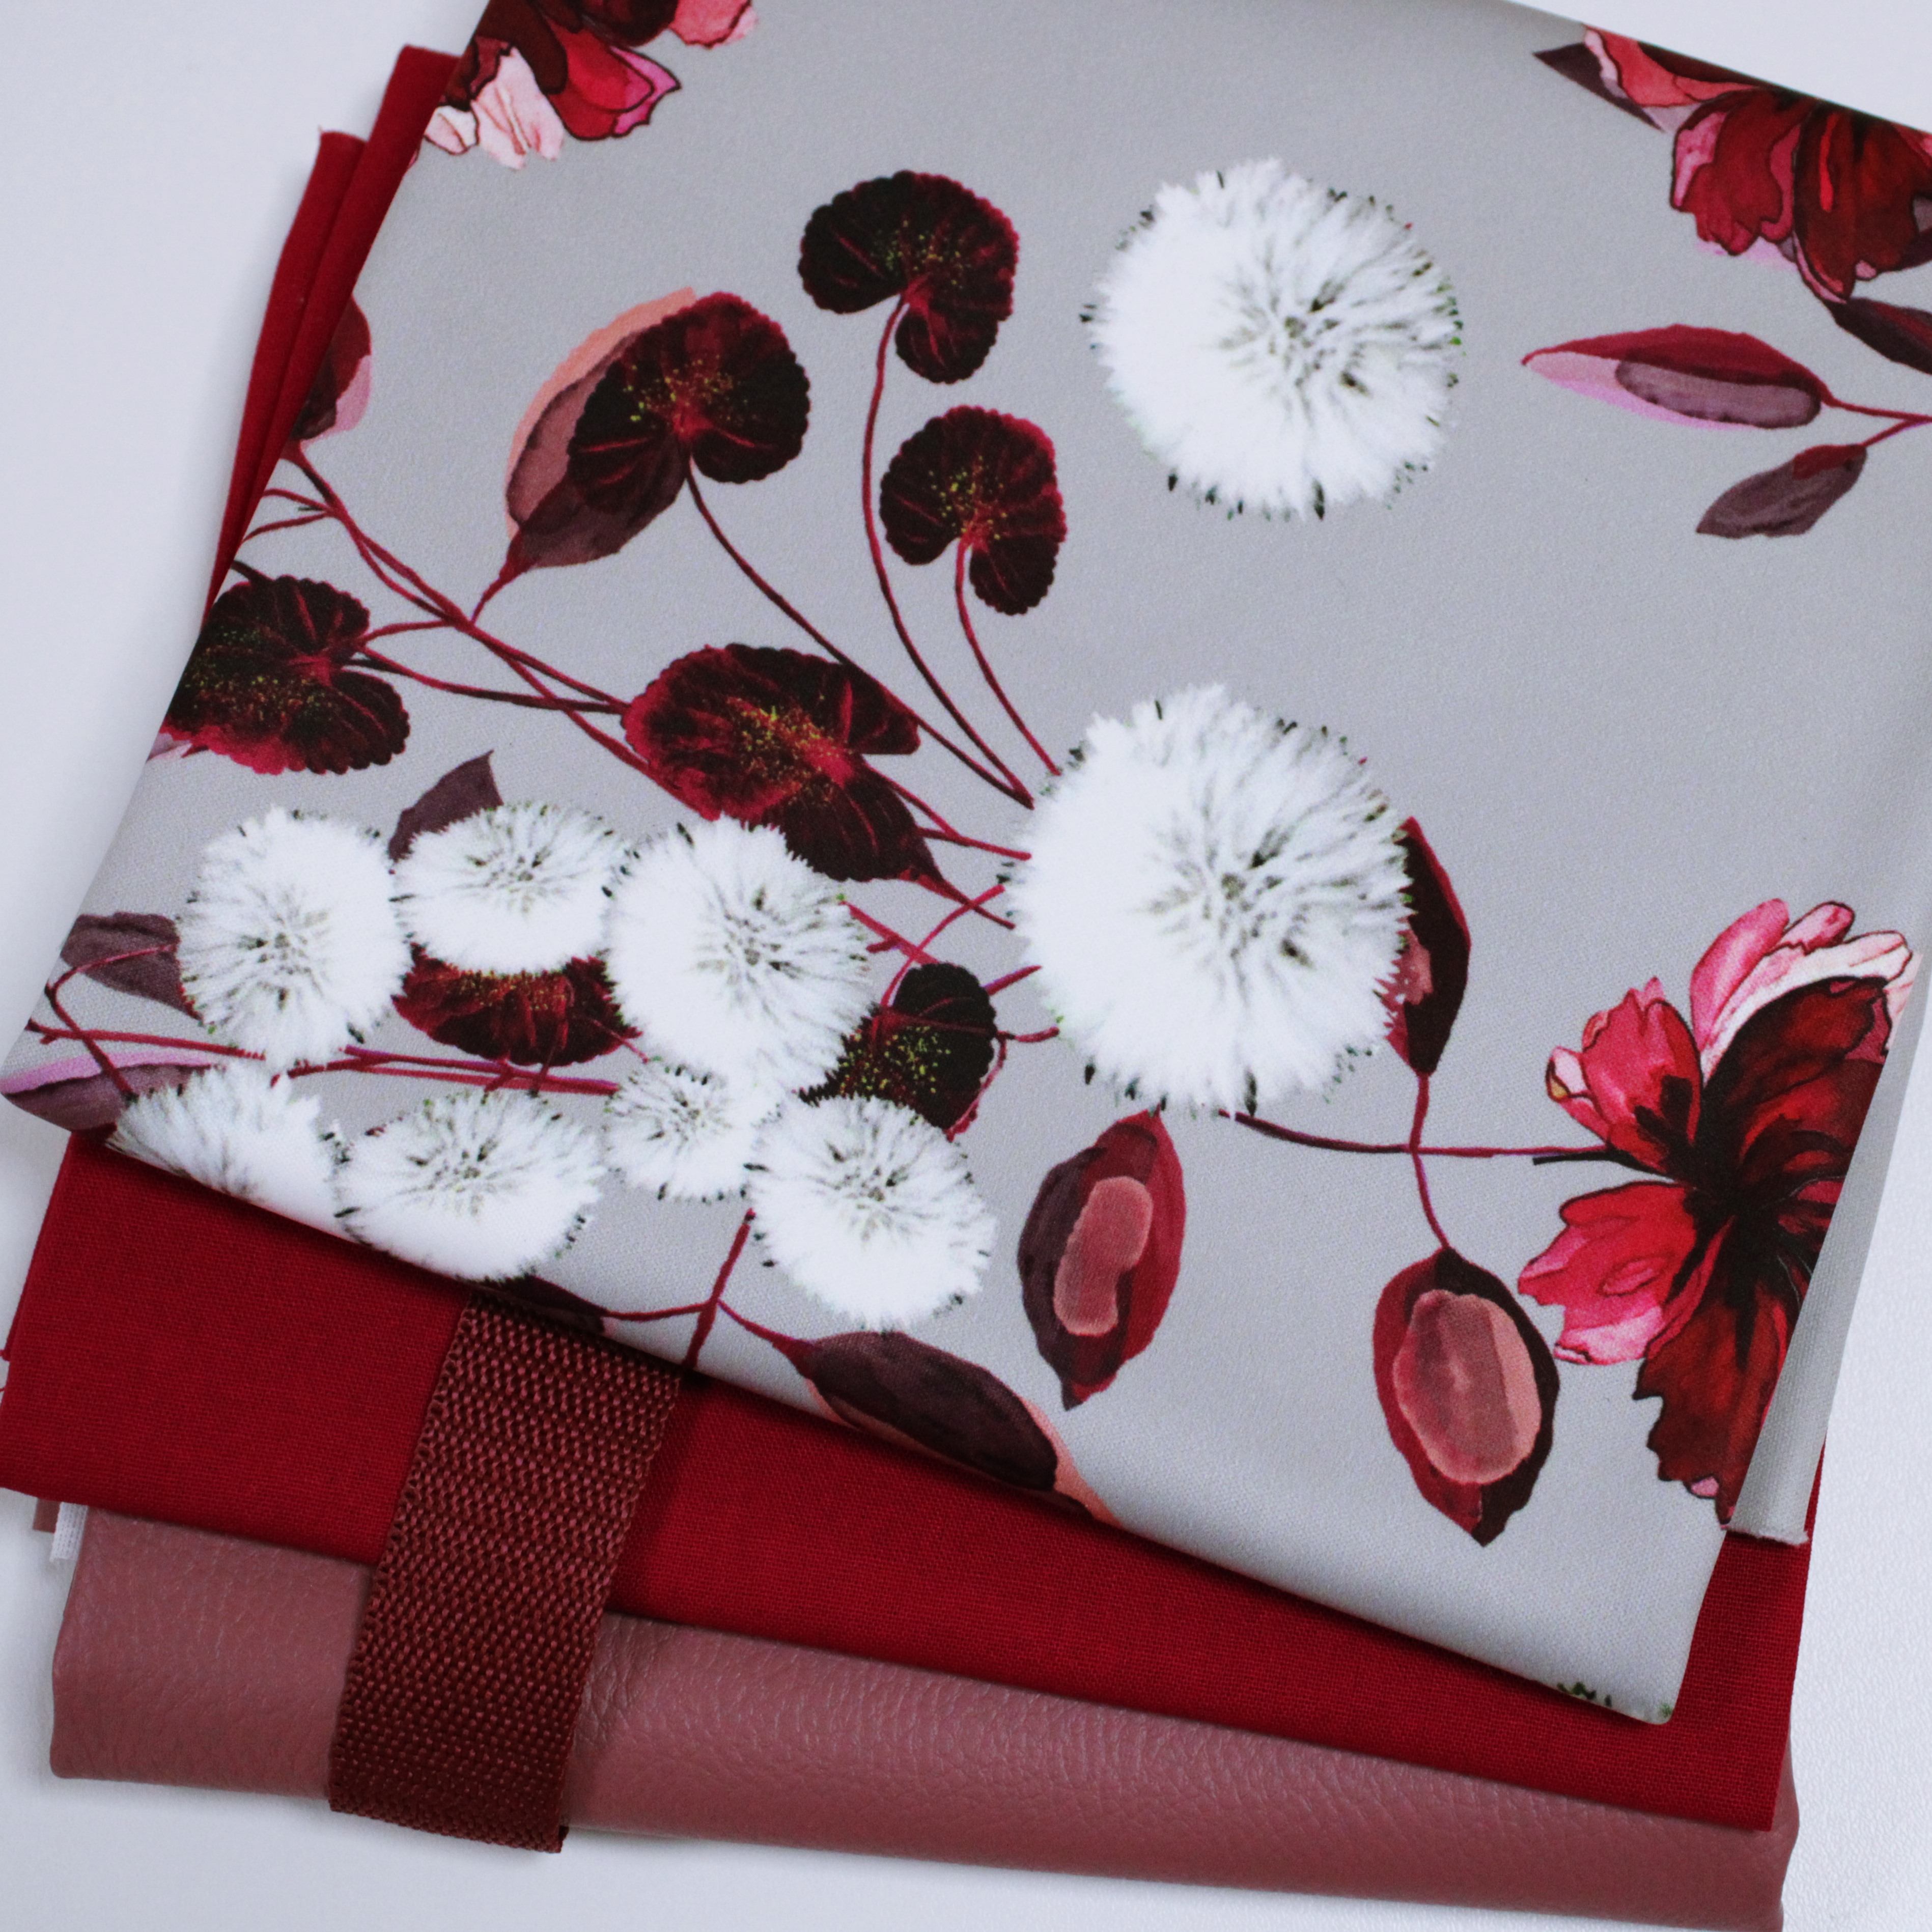 Stoffpaket  - Schnuckidu Stoffpaket -  Taschenpaket Red Dandelion - Fuchsia/Altrosa